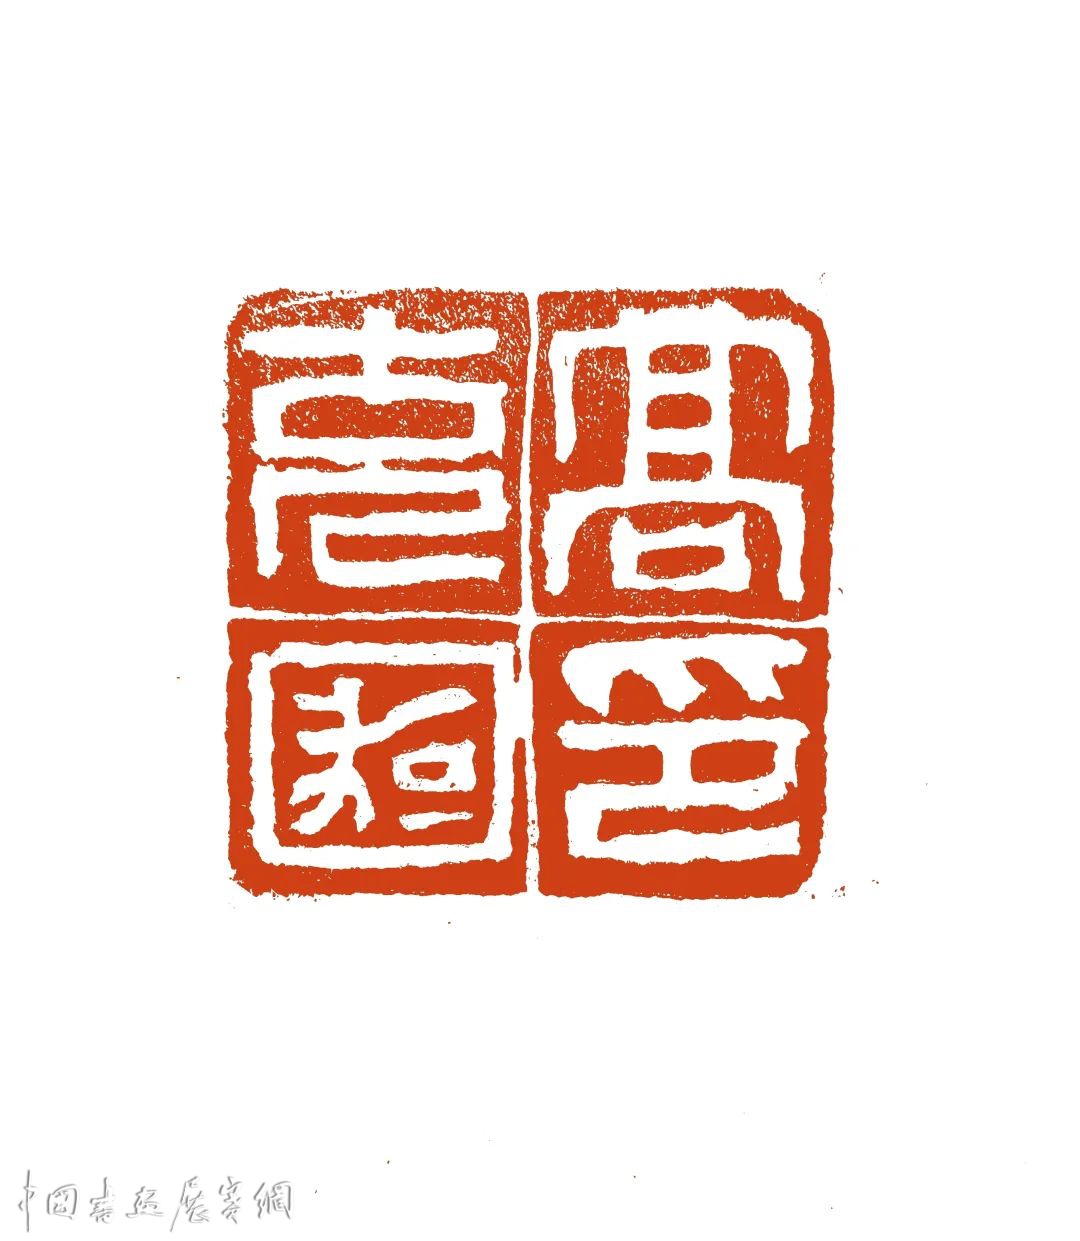 【新闻】上海书协第二届青少年篆刻培训班成功举办